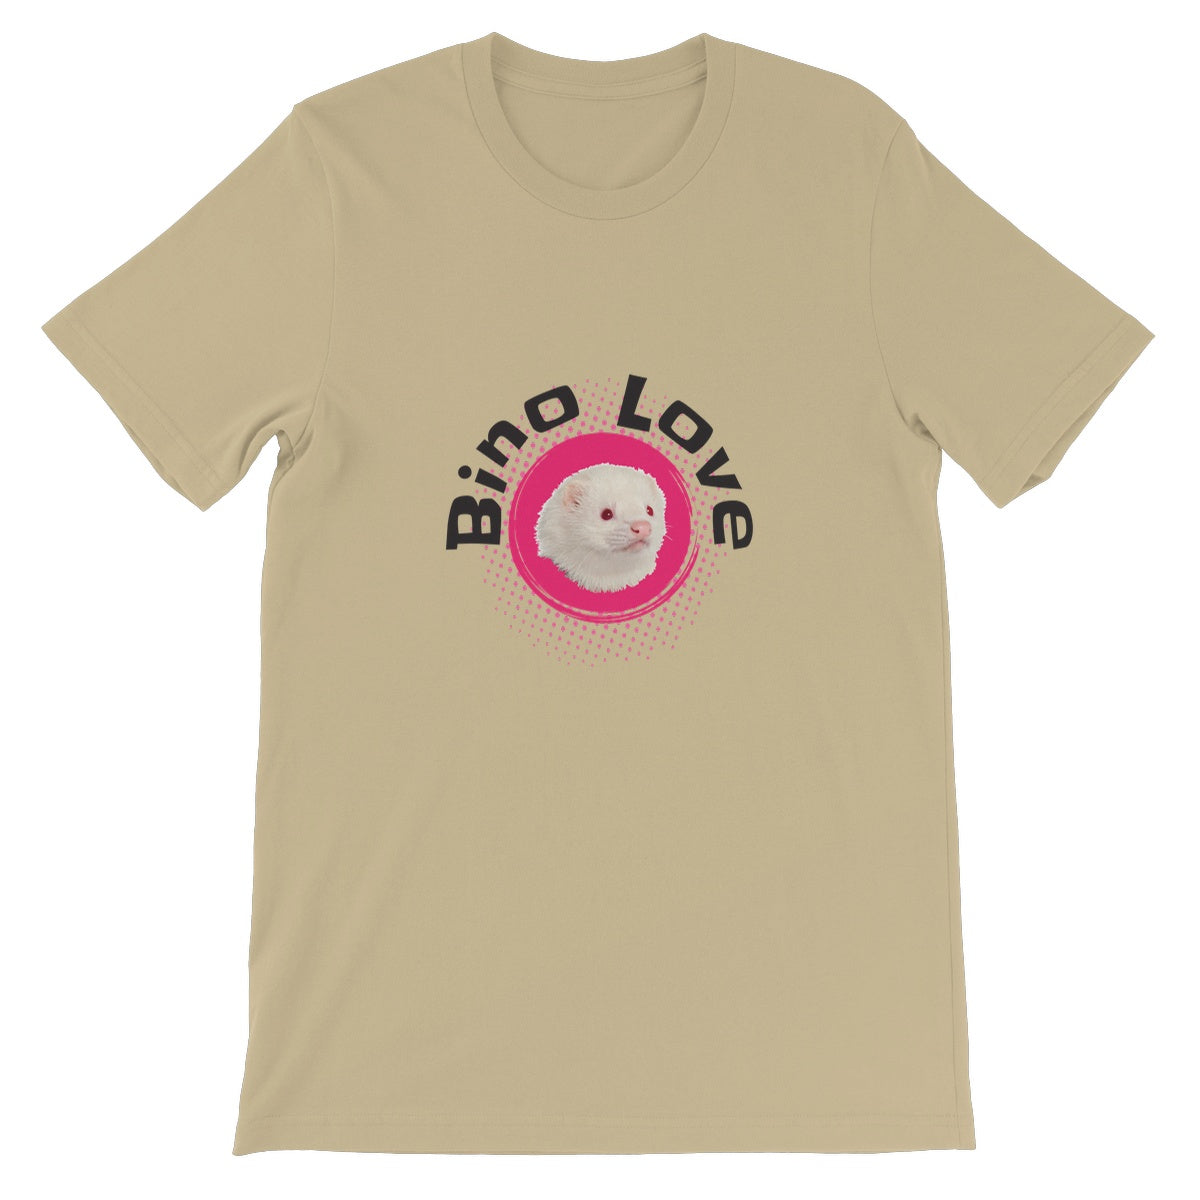 Bino Love Unisex Short Sleeve T-Shirt